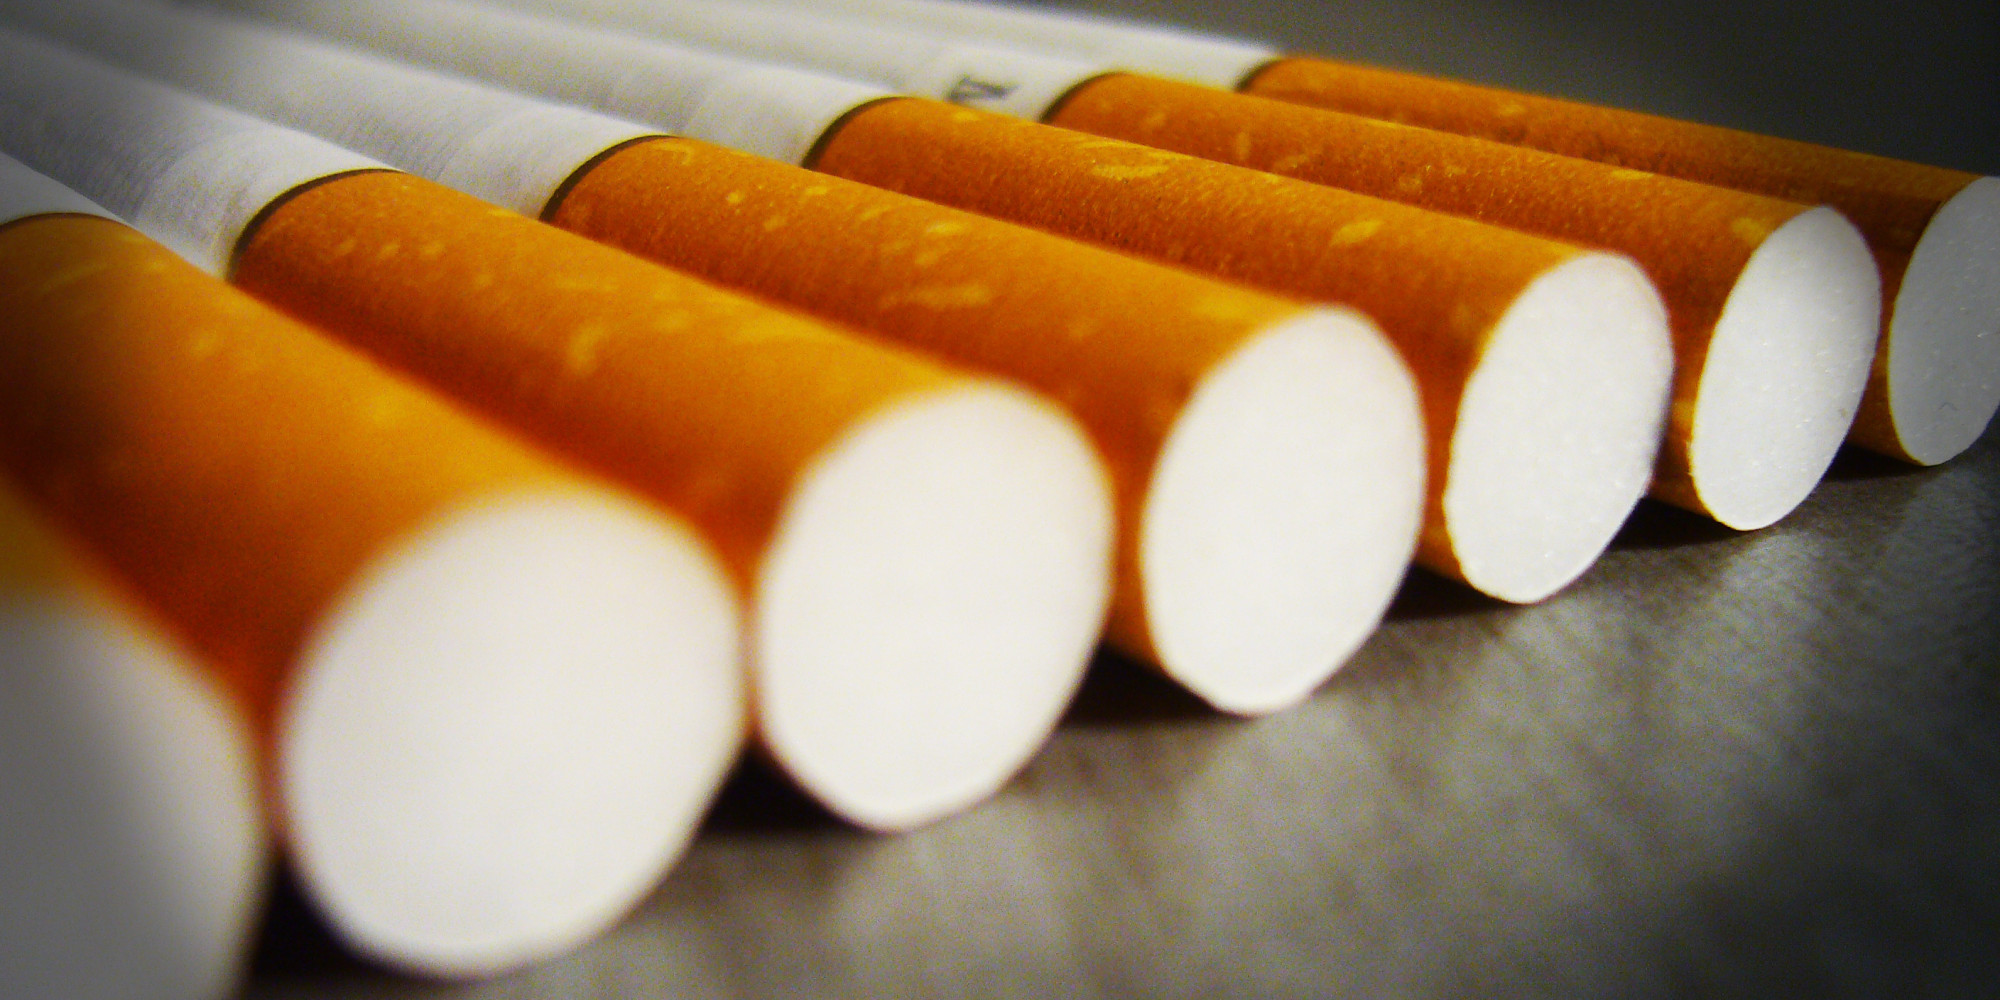   الأسعار الرسمية للسجائر بعد الزيادة حسب بيان «الشرقية للدخان» للبورصة